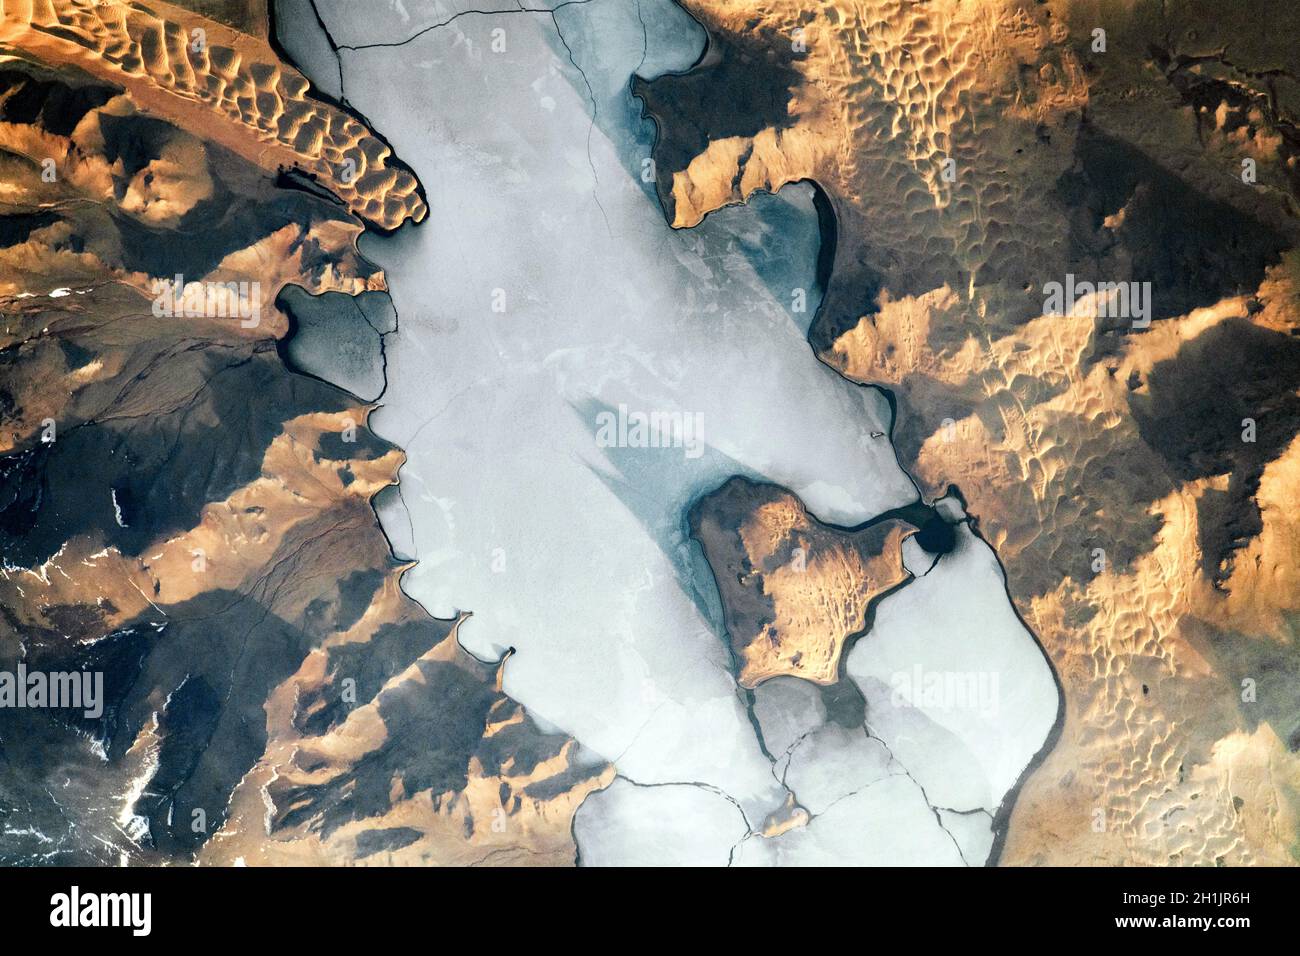 Imagerie Landsat de la Terre : les ombres accentuent la topographie à l'intérieur et autour d'Ulaagchinii Khar Nuur (lac) en Mongolie dans cette photo de lever du soleil prise à partir de la Station spatiale internationale (ISS).Notez les grandes et petites îles d'Avgash.Des fissures pénètrent la surface couverte de glace du lac, et des dunes s'enfilent sur la rive.La surface froide et plate de la glace contraste avec les vagues uniques et vallonnées des dunes de sable.Une version optimisée et numériquement améliorée d'une NASA image / crédit NASA Banque D'Images